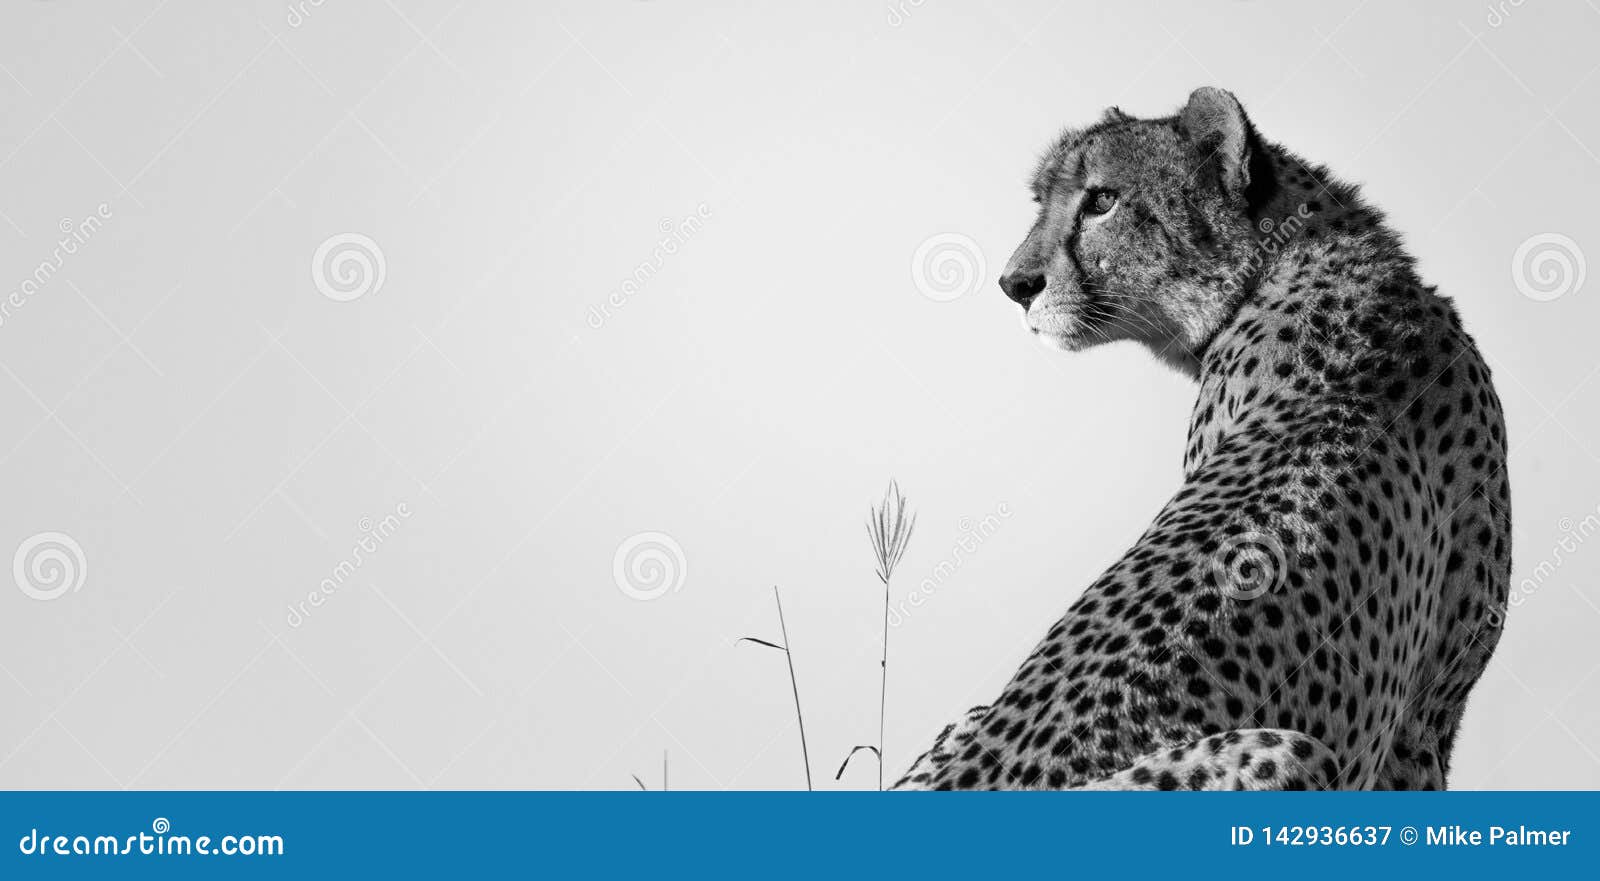 Cheetah Surveyor stock image. Image of mammal, prey - 142936637